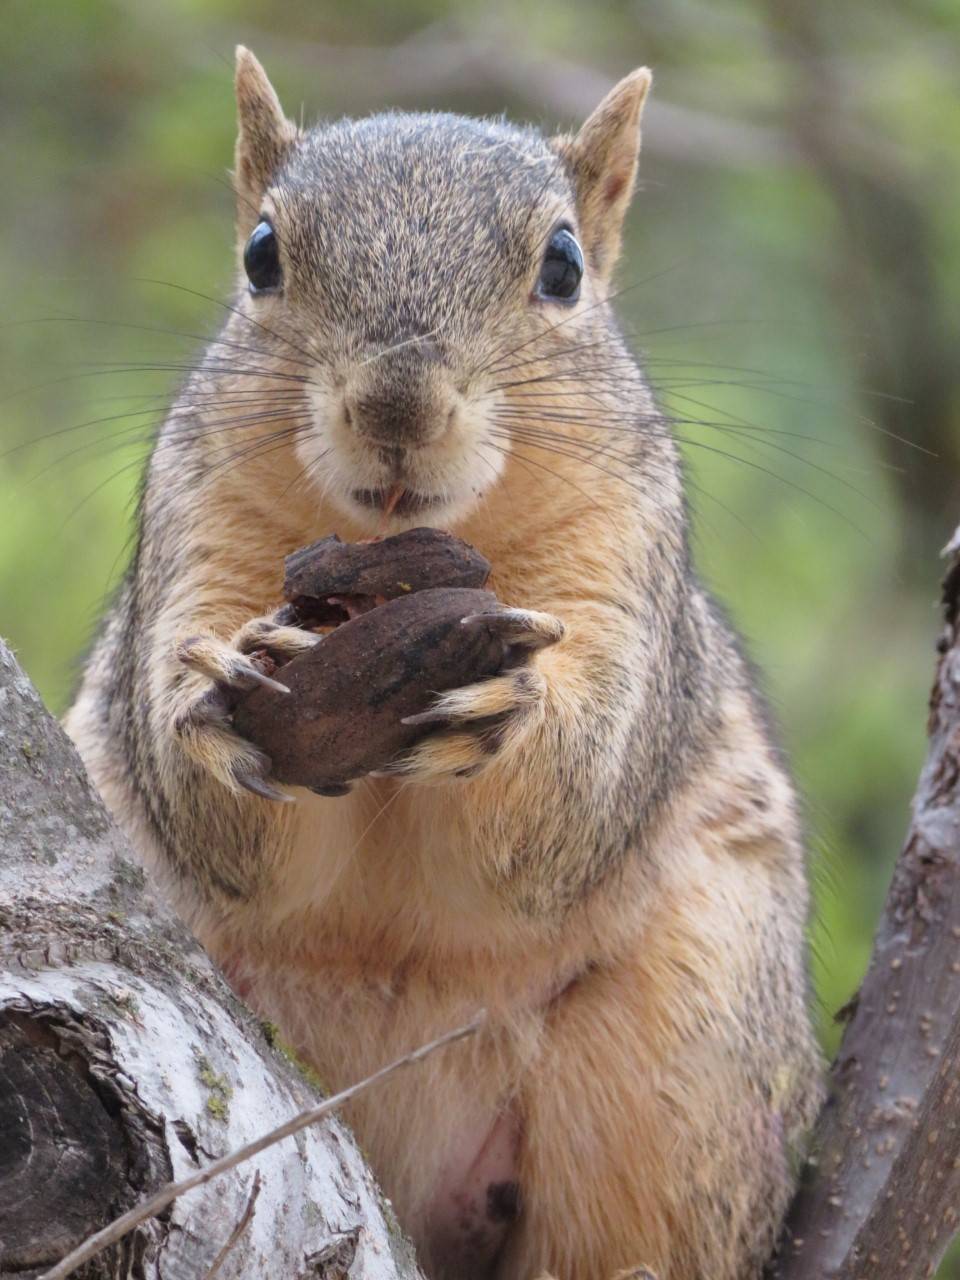 A squirrel eats a pecan.